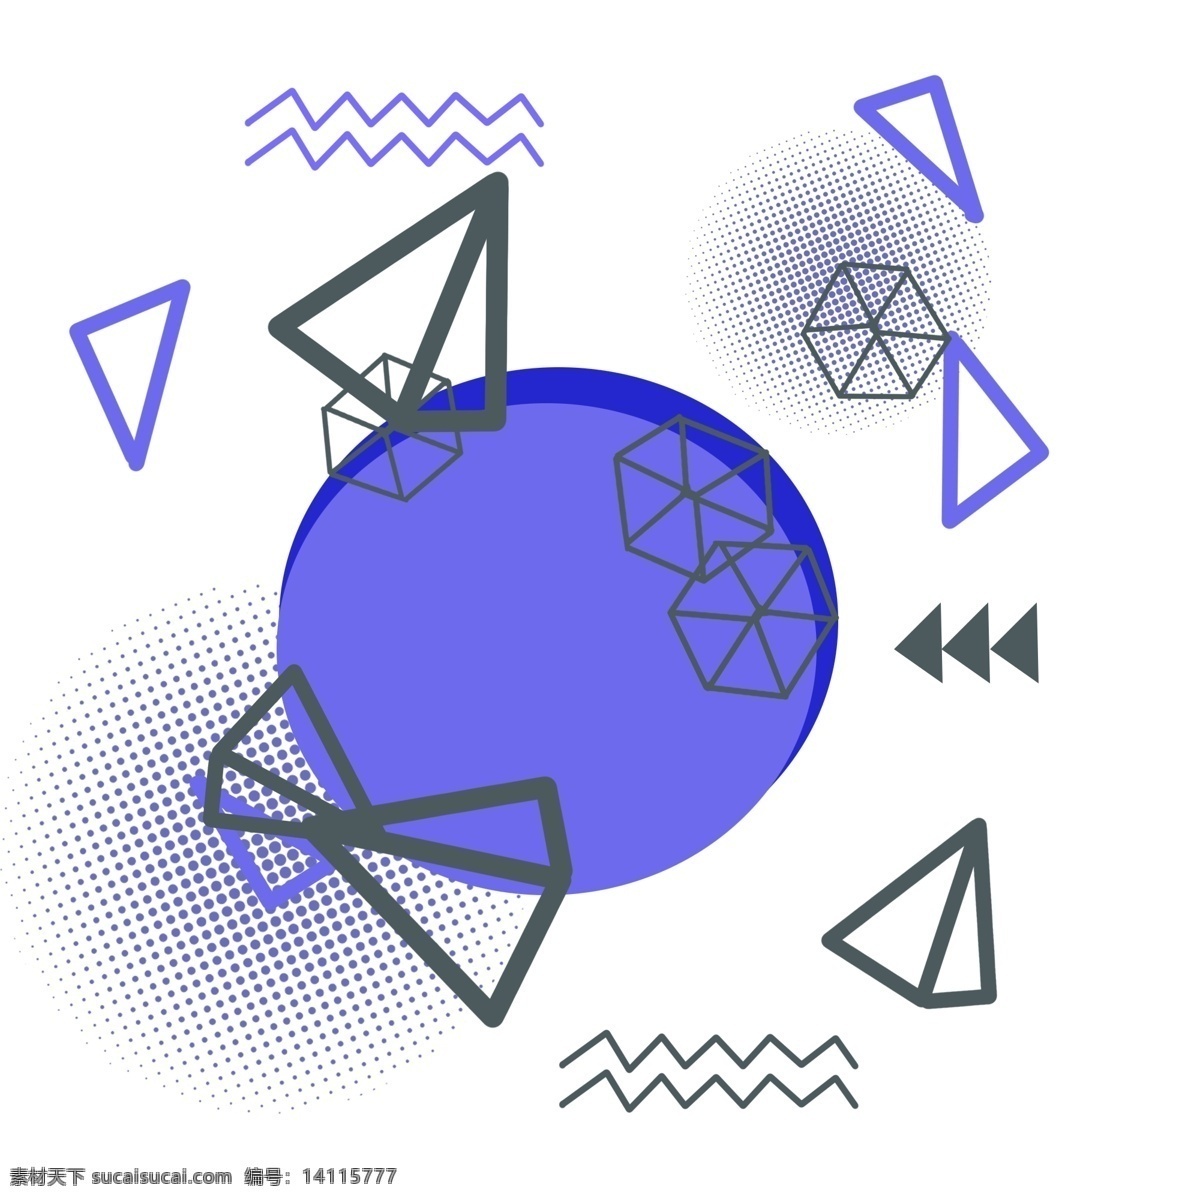 斑点 波纹 孟菲斯 风格 漂浮 装饰 深蓝色 点状 几何图案 几何线条 底图几何 时尚创意 波普几何 波普线条